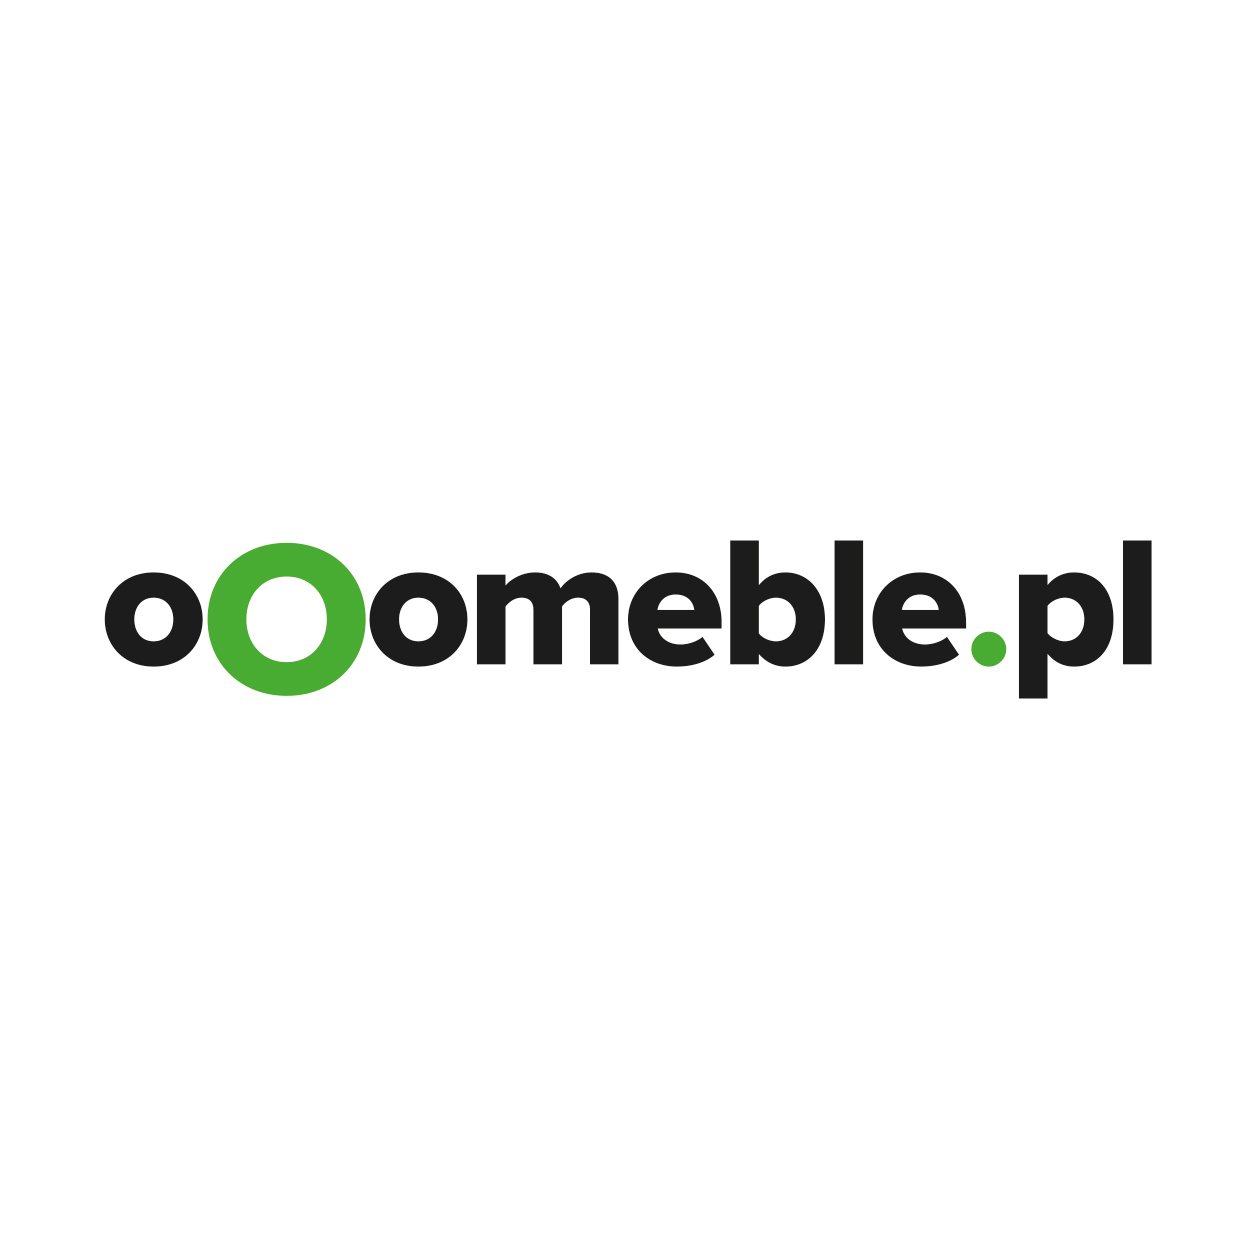 ooomeble